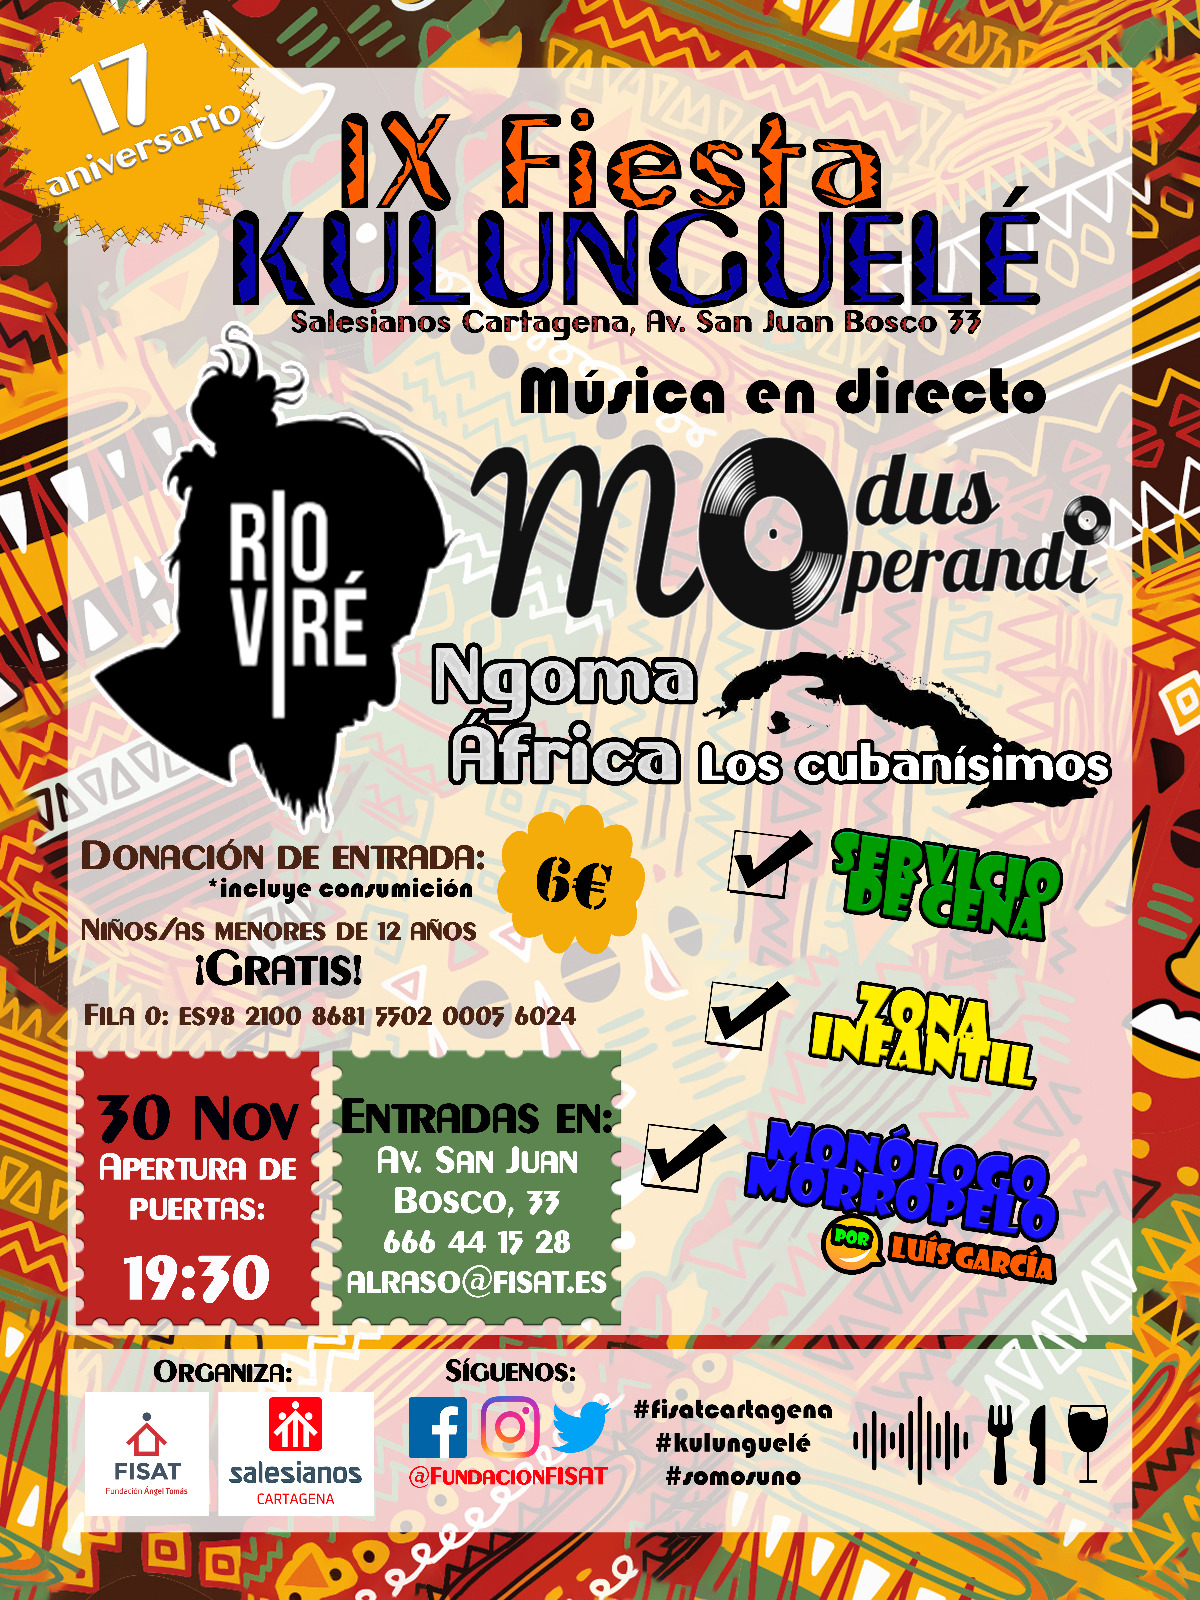 Llega KULUNGUELÉ, la fiesta solidaria de Cartagena, a favor de los proyectos sociales